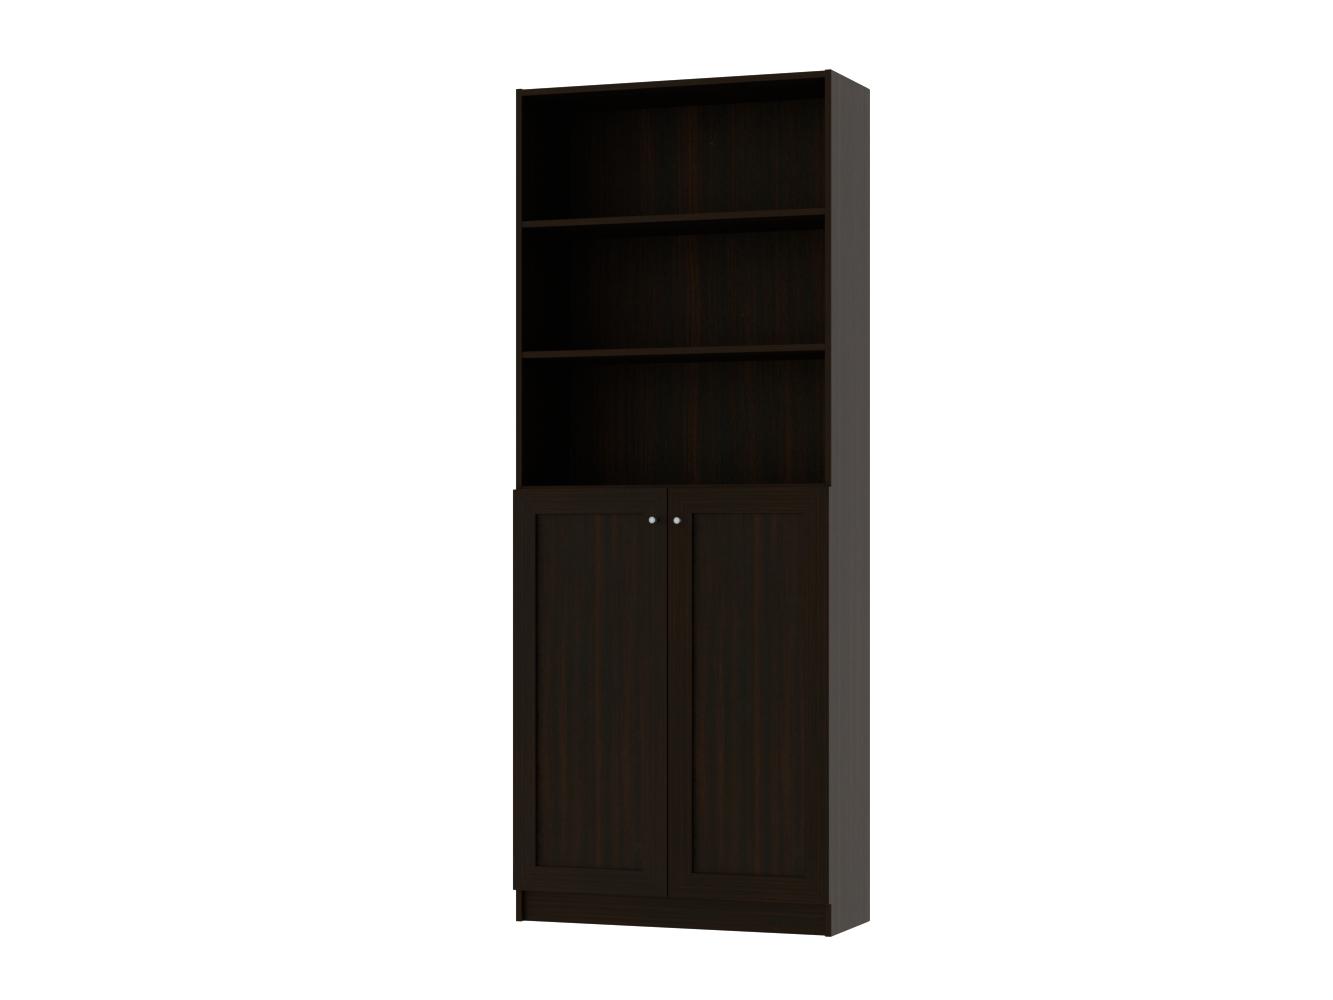  Книжный шкаф Билли 350 brown ИКЕА (IKEA) изображение товара